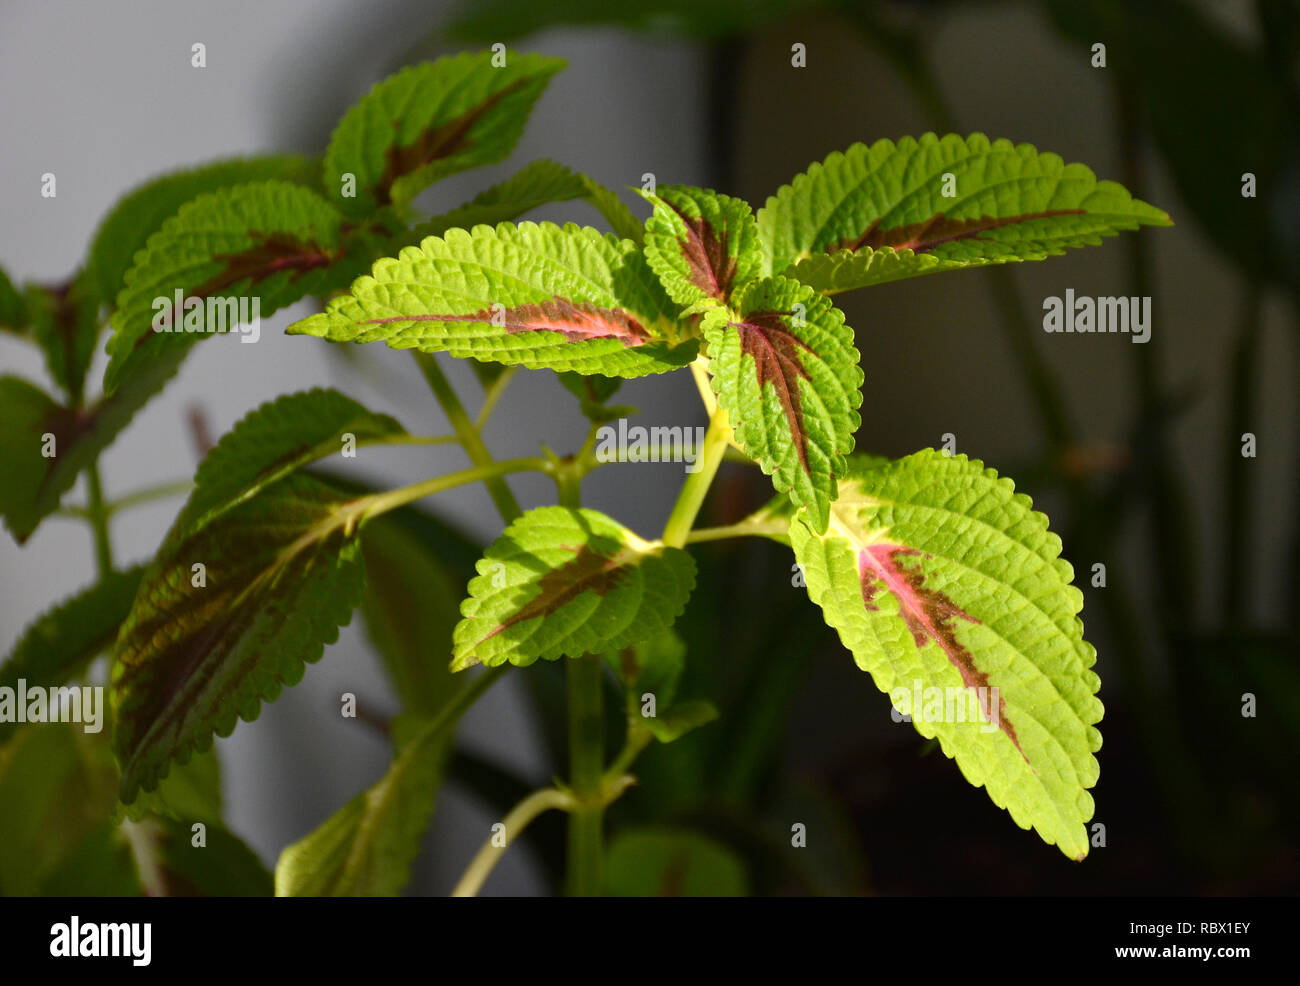 Zimmerpflanze coleus oder bunte Brennnessel indoor. Bunte grün und lila  Coleus Blätter Stockfotografie - Alamy